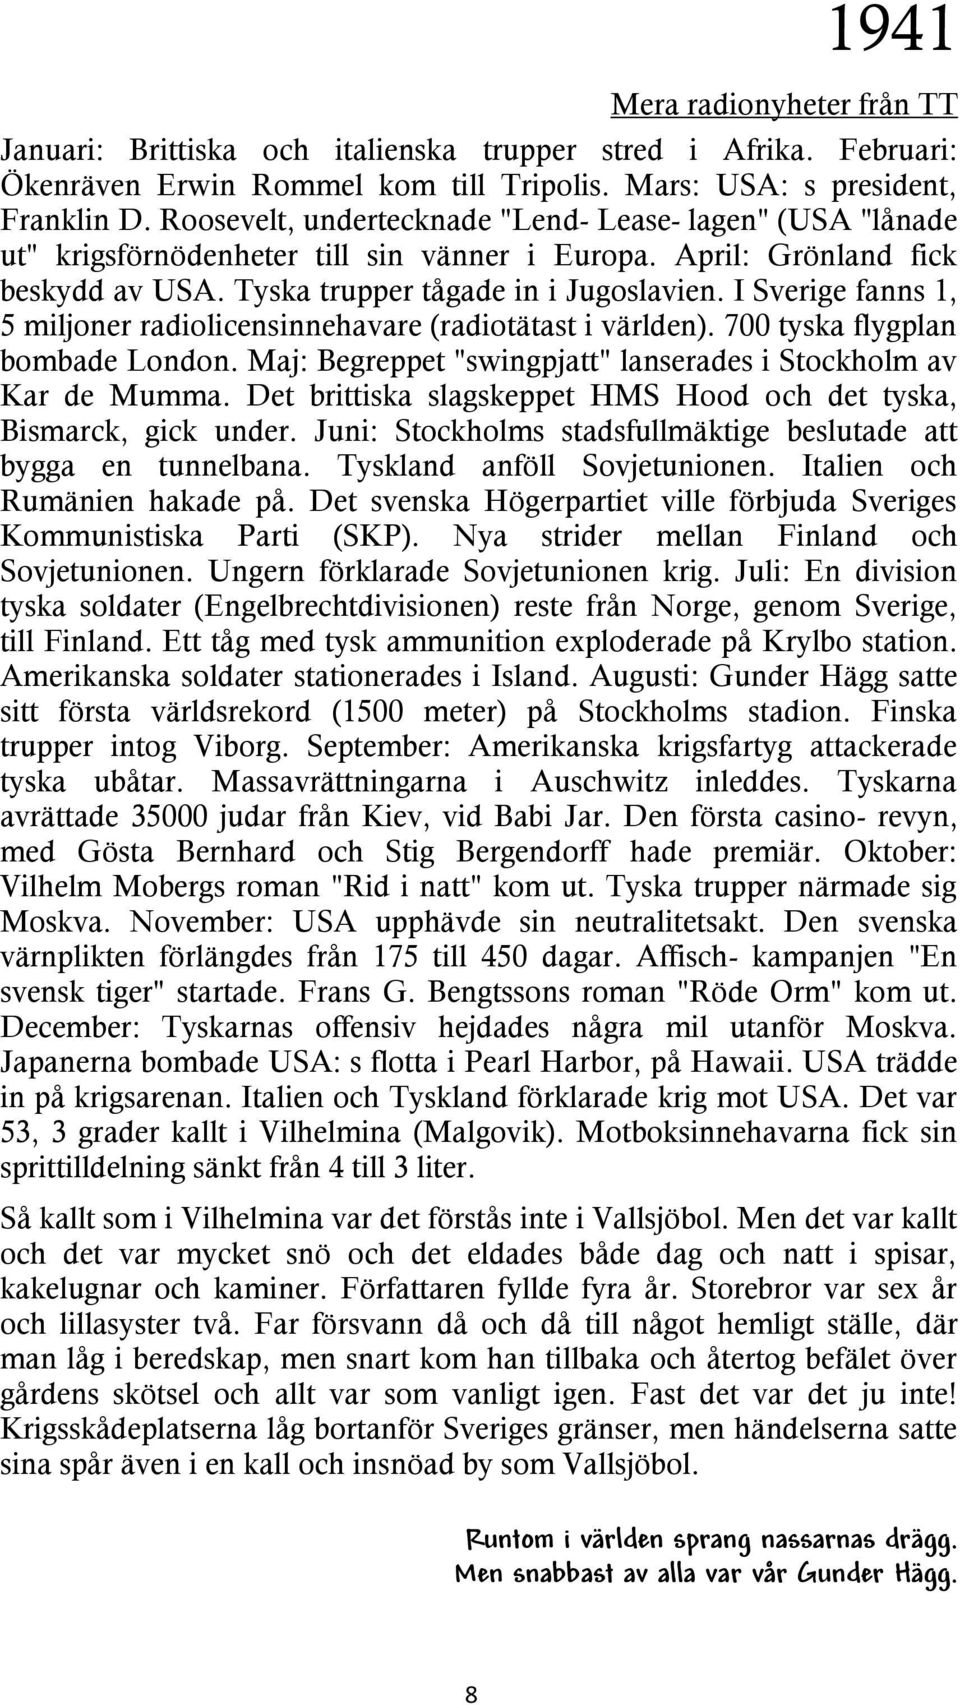 I Sverige fanns 1, 5 miljoner radiolicensinnehavare (radiotätast i världen). 700 tyska flygplan bombade London. Maj: Begreppet "swingpjatt" lanserades i Stockholm av Kar de Mumma.